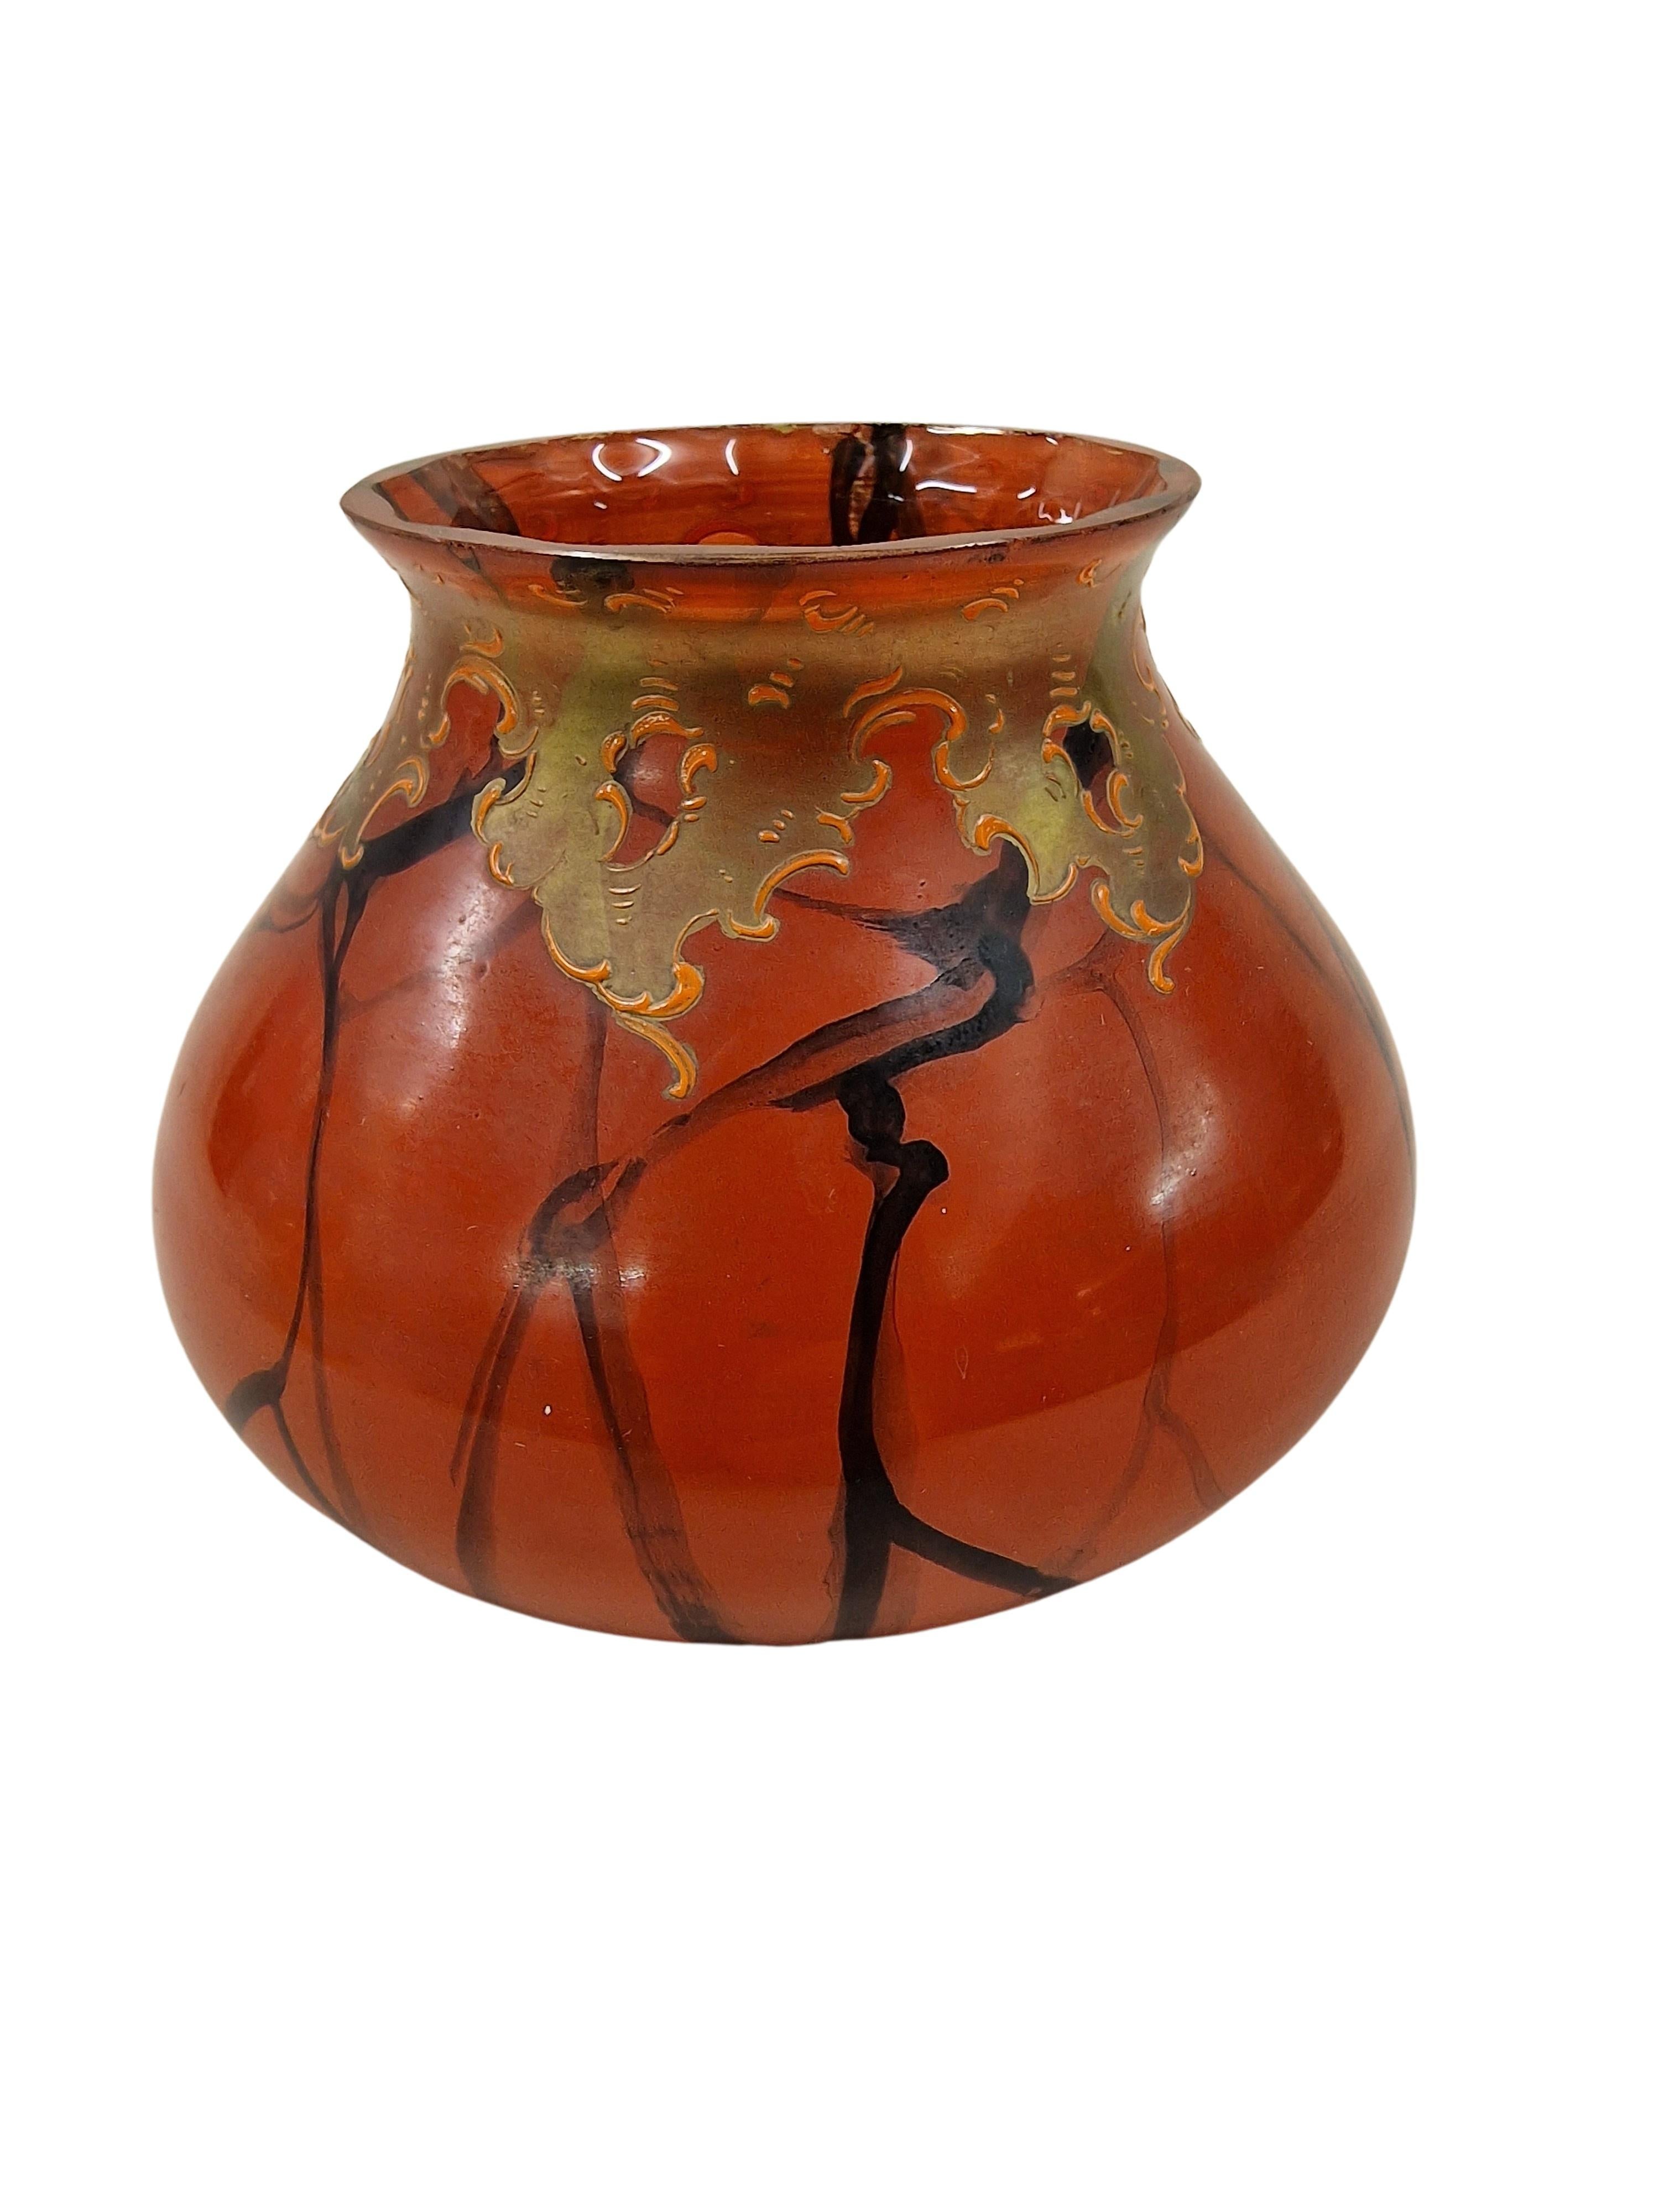 Ce vase français est un très bel objet de l'époque Art Nouveau / Jugendstil. 
Le corps du verre est en verre orange avec un sommet magnifiquement taillé. L'ensemble du corps bolbique est peint à l'infini avec un décor de branches stylisées, ce qui